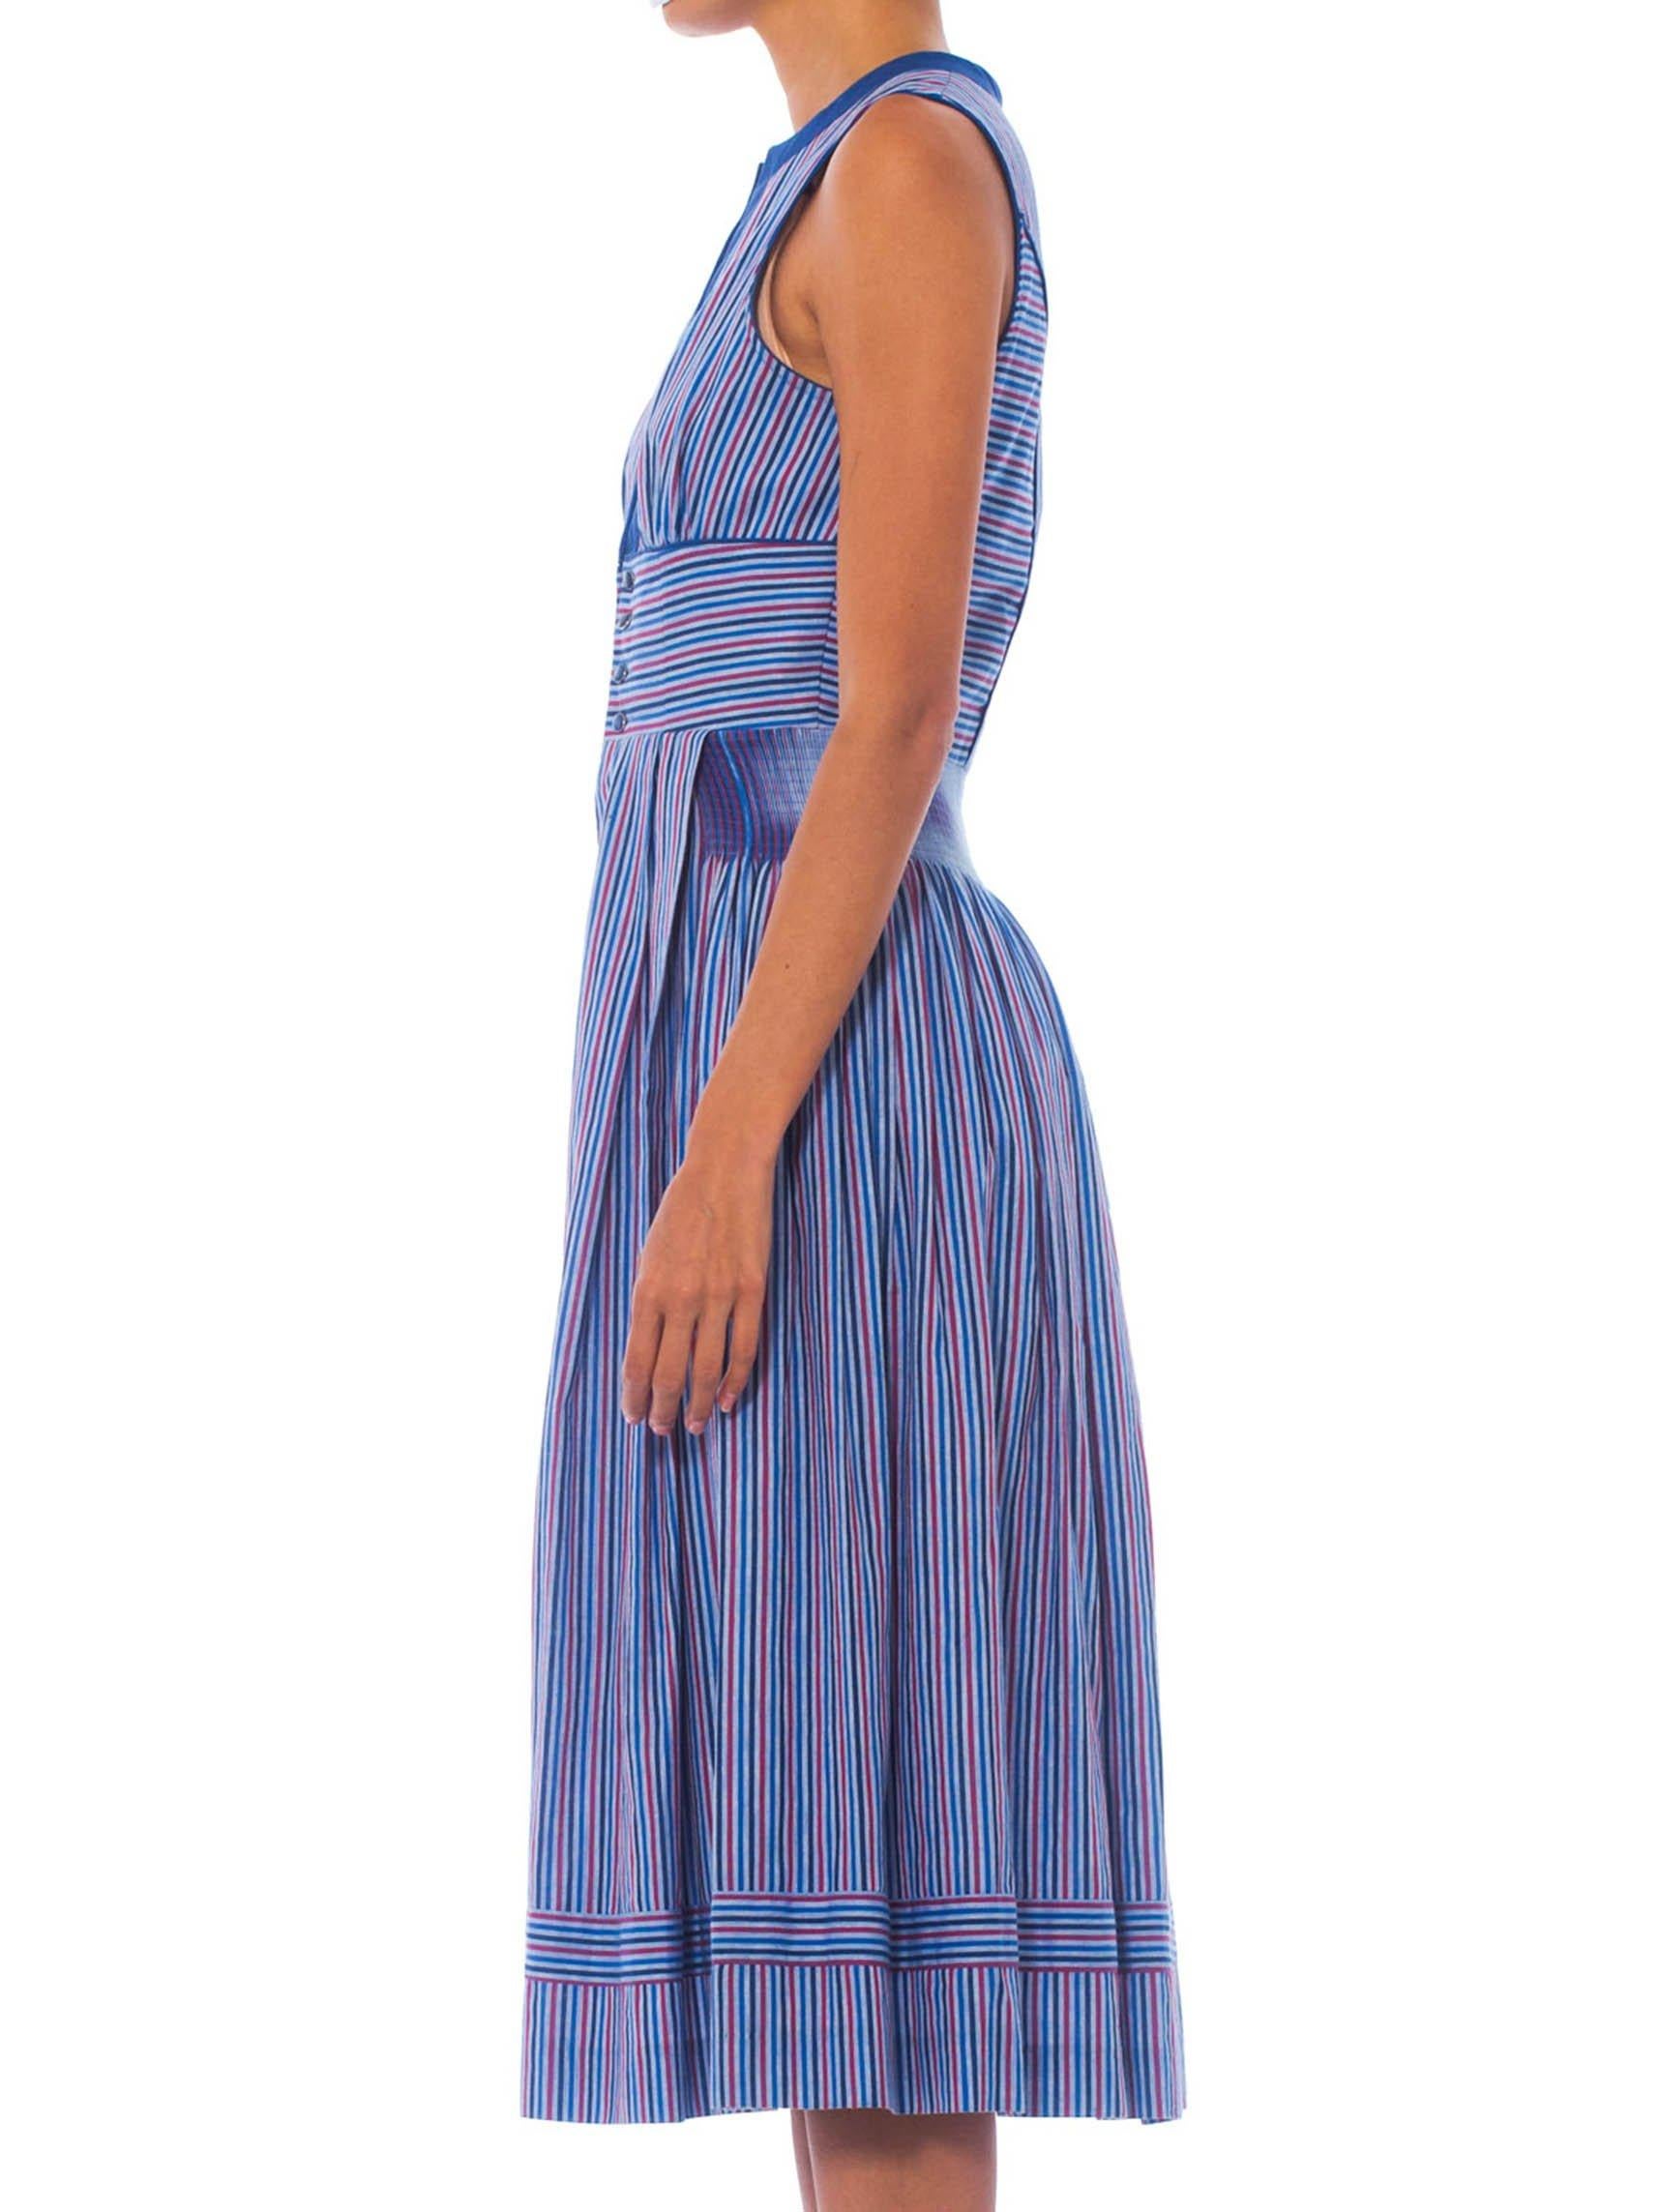 Women's 1950S Blue Striped Cotton Fit & Flare Rockabilly Dress